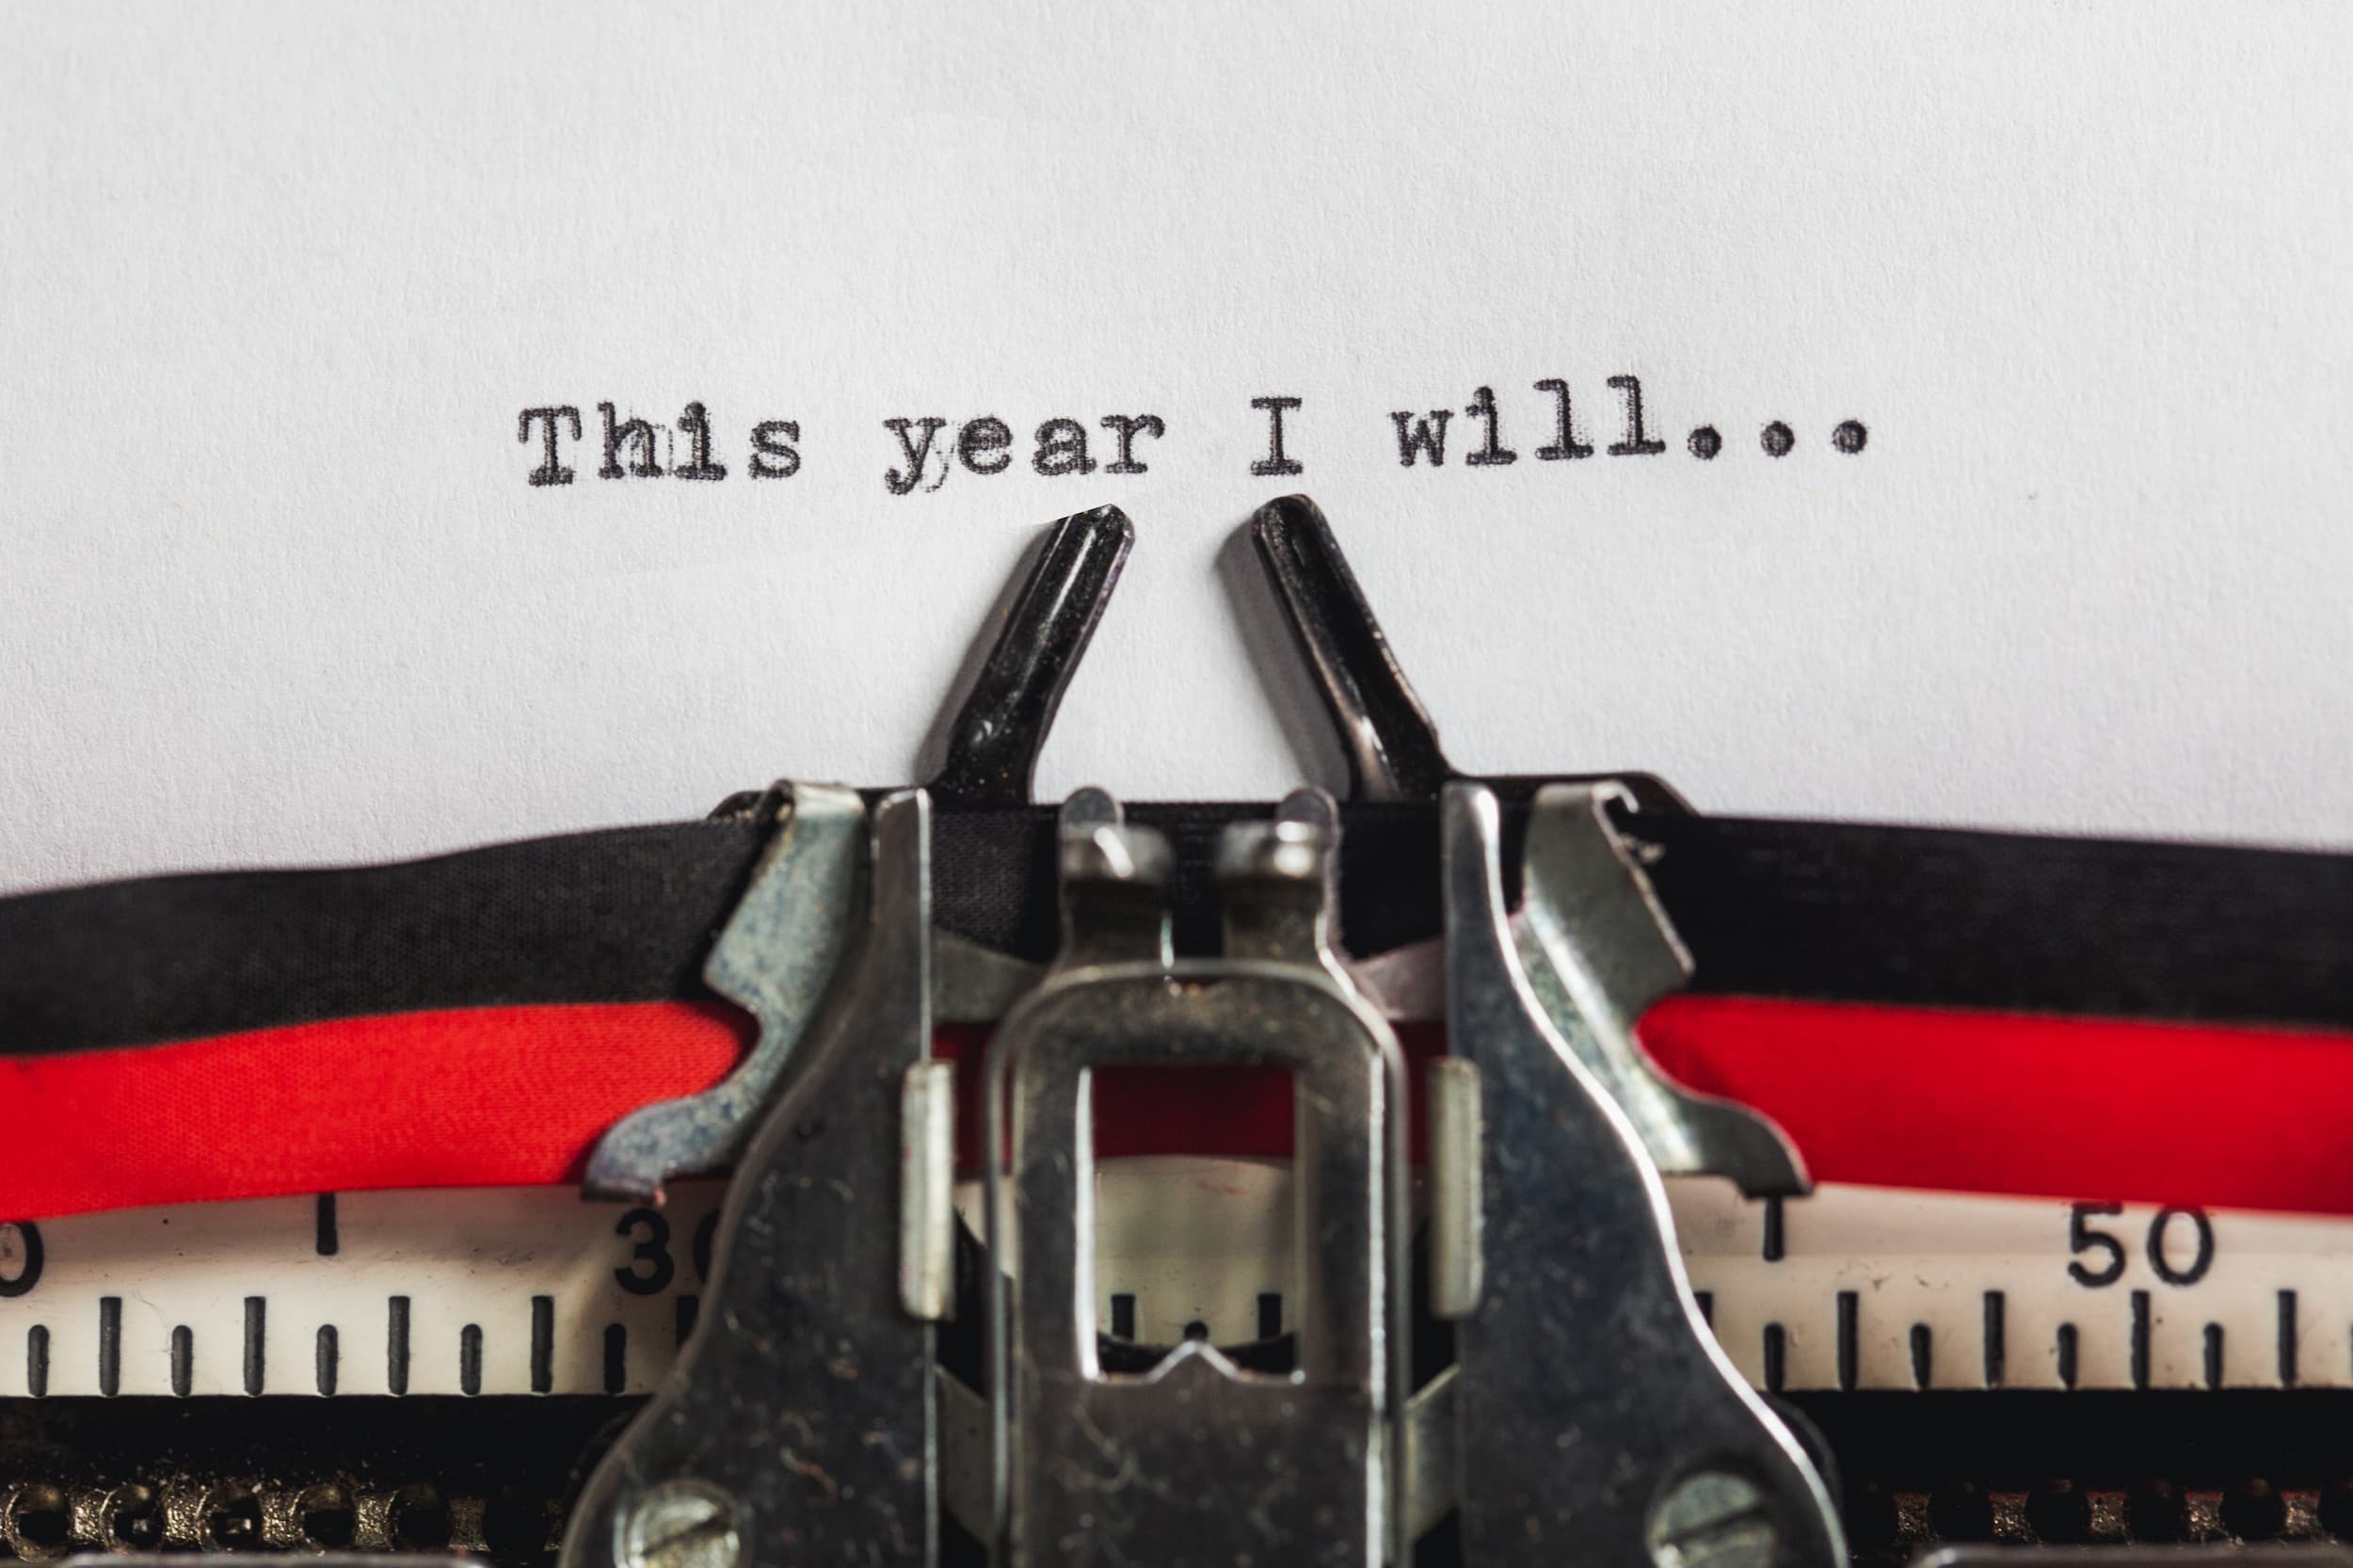 Typewriter writing phrase "This year I will..."